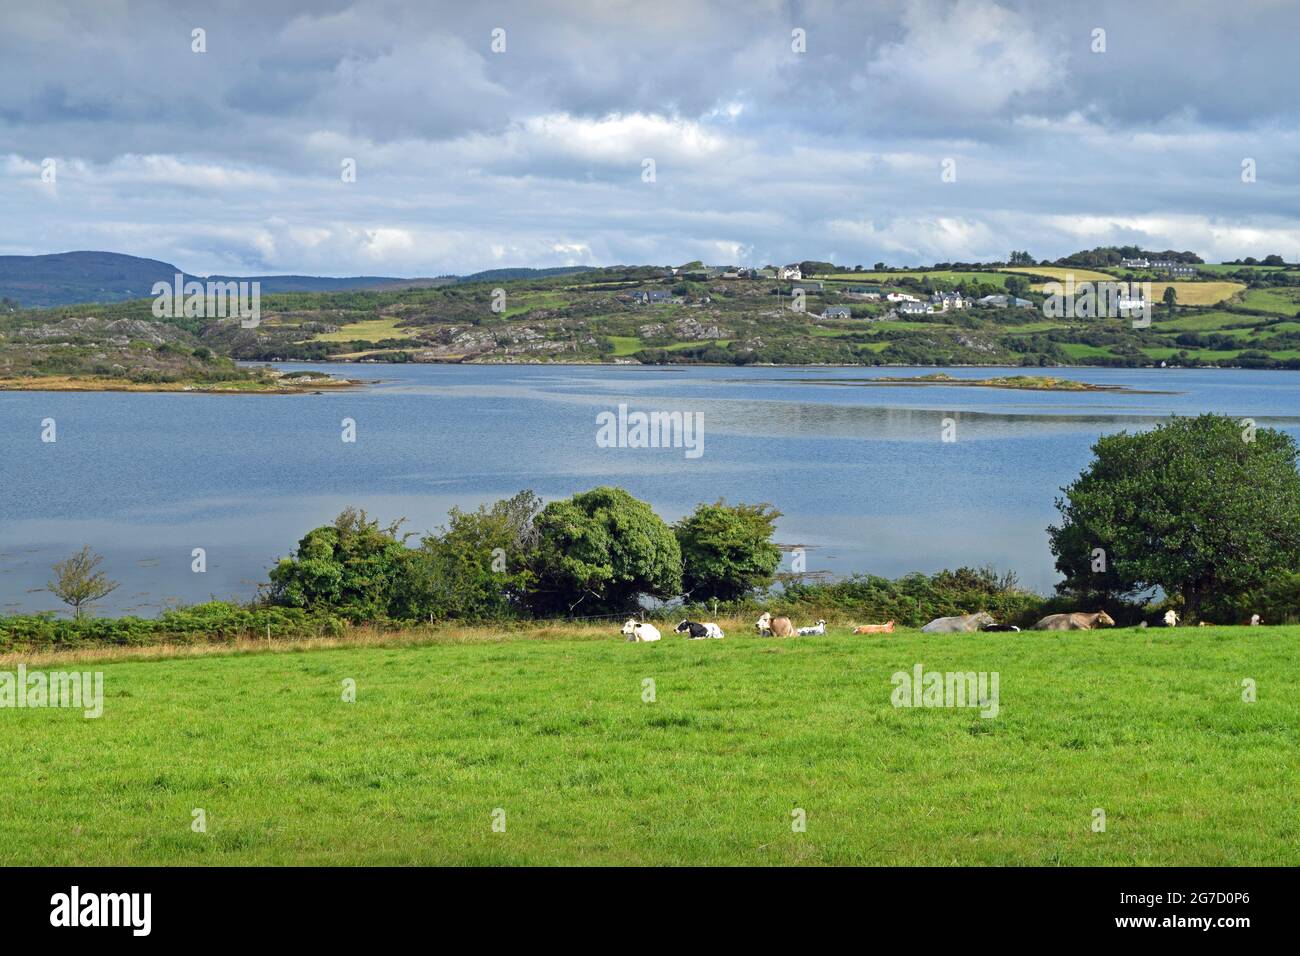 Una vista a través de la bahía de Roaring Water Bay cerca de Ballydehob, West Cork en Irlanda. Foto de stock